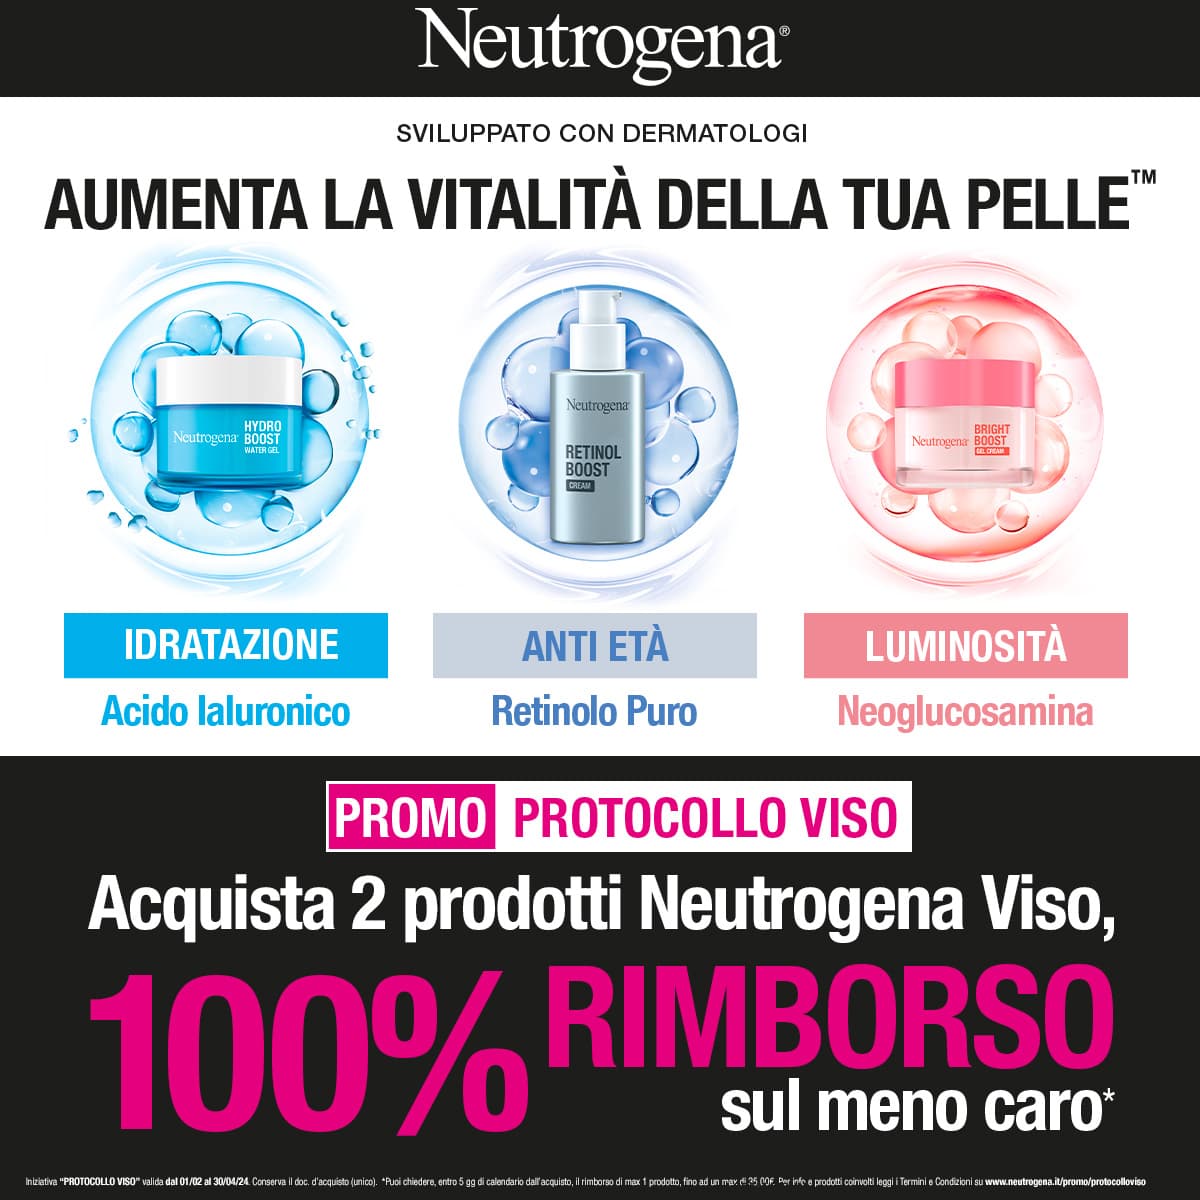 Neutrogena Promo protocollo viso: Acquista 2 prodotti Neutrogena Viso, 100% di rimborso sul meno caro!